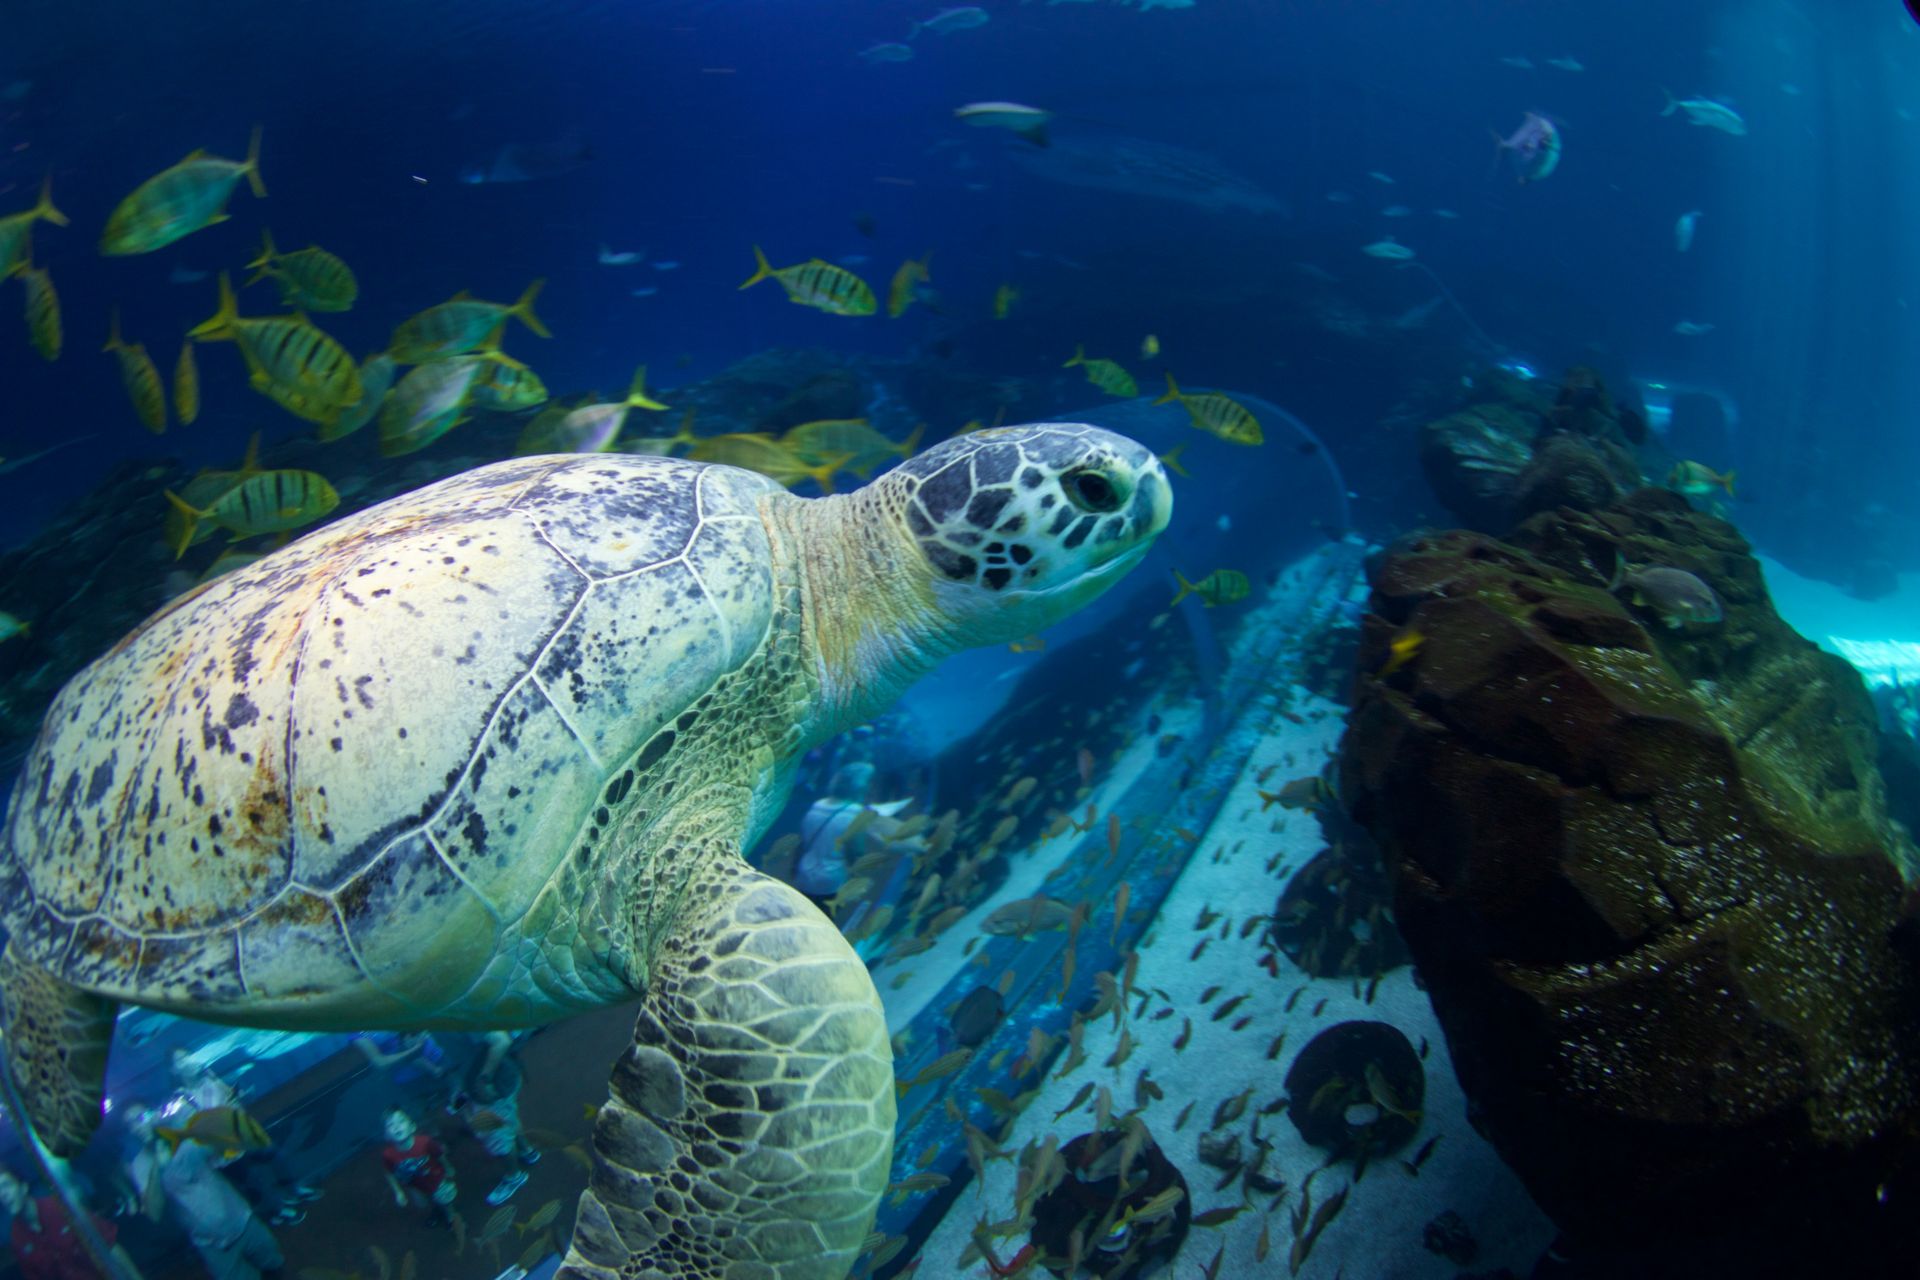 One Year Later: Tank the Green Sea Turtle | Georgia Aquarium